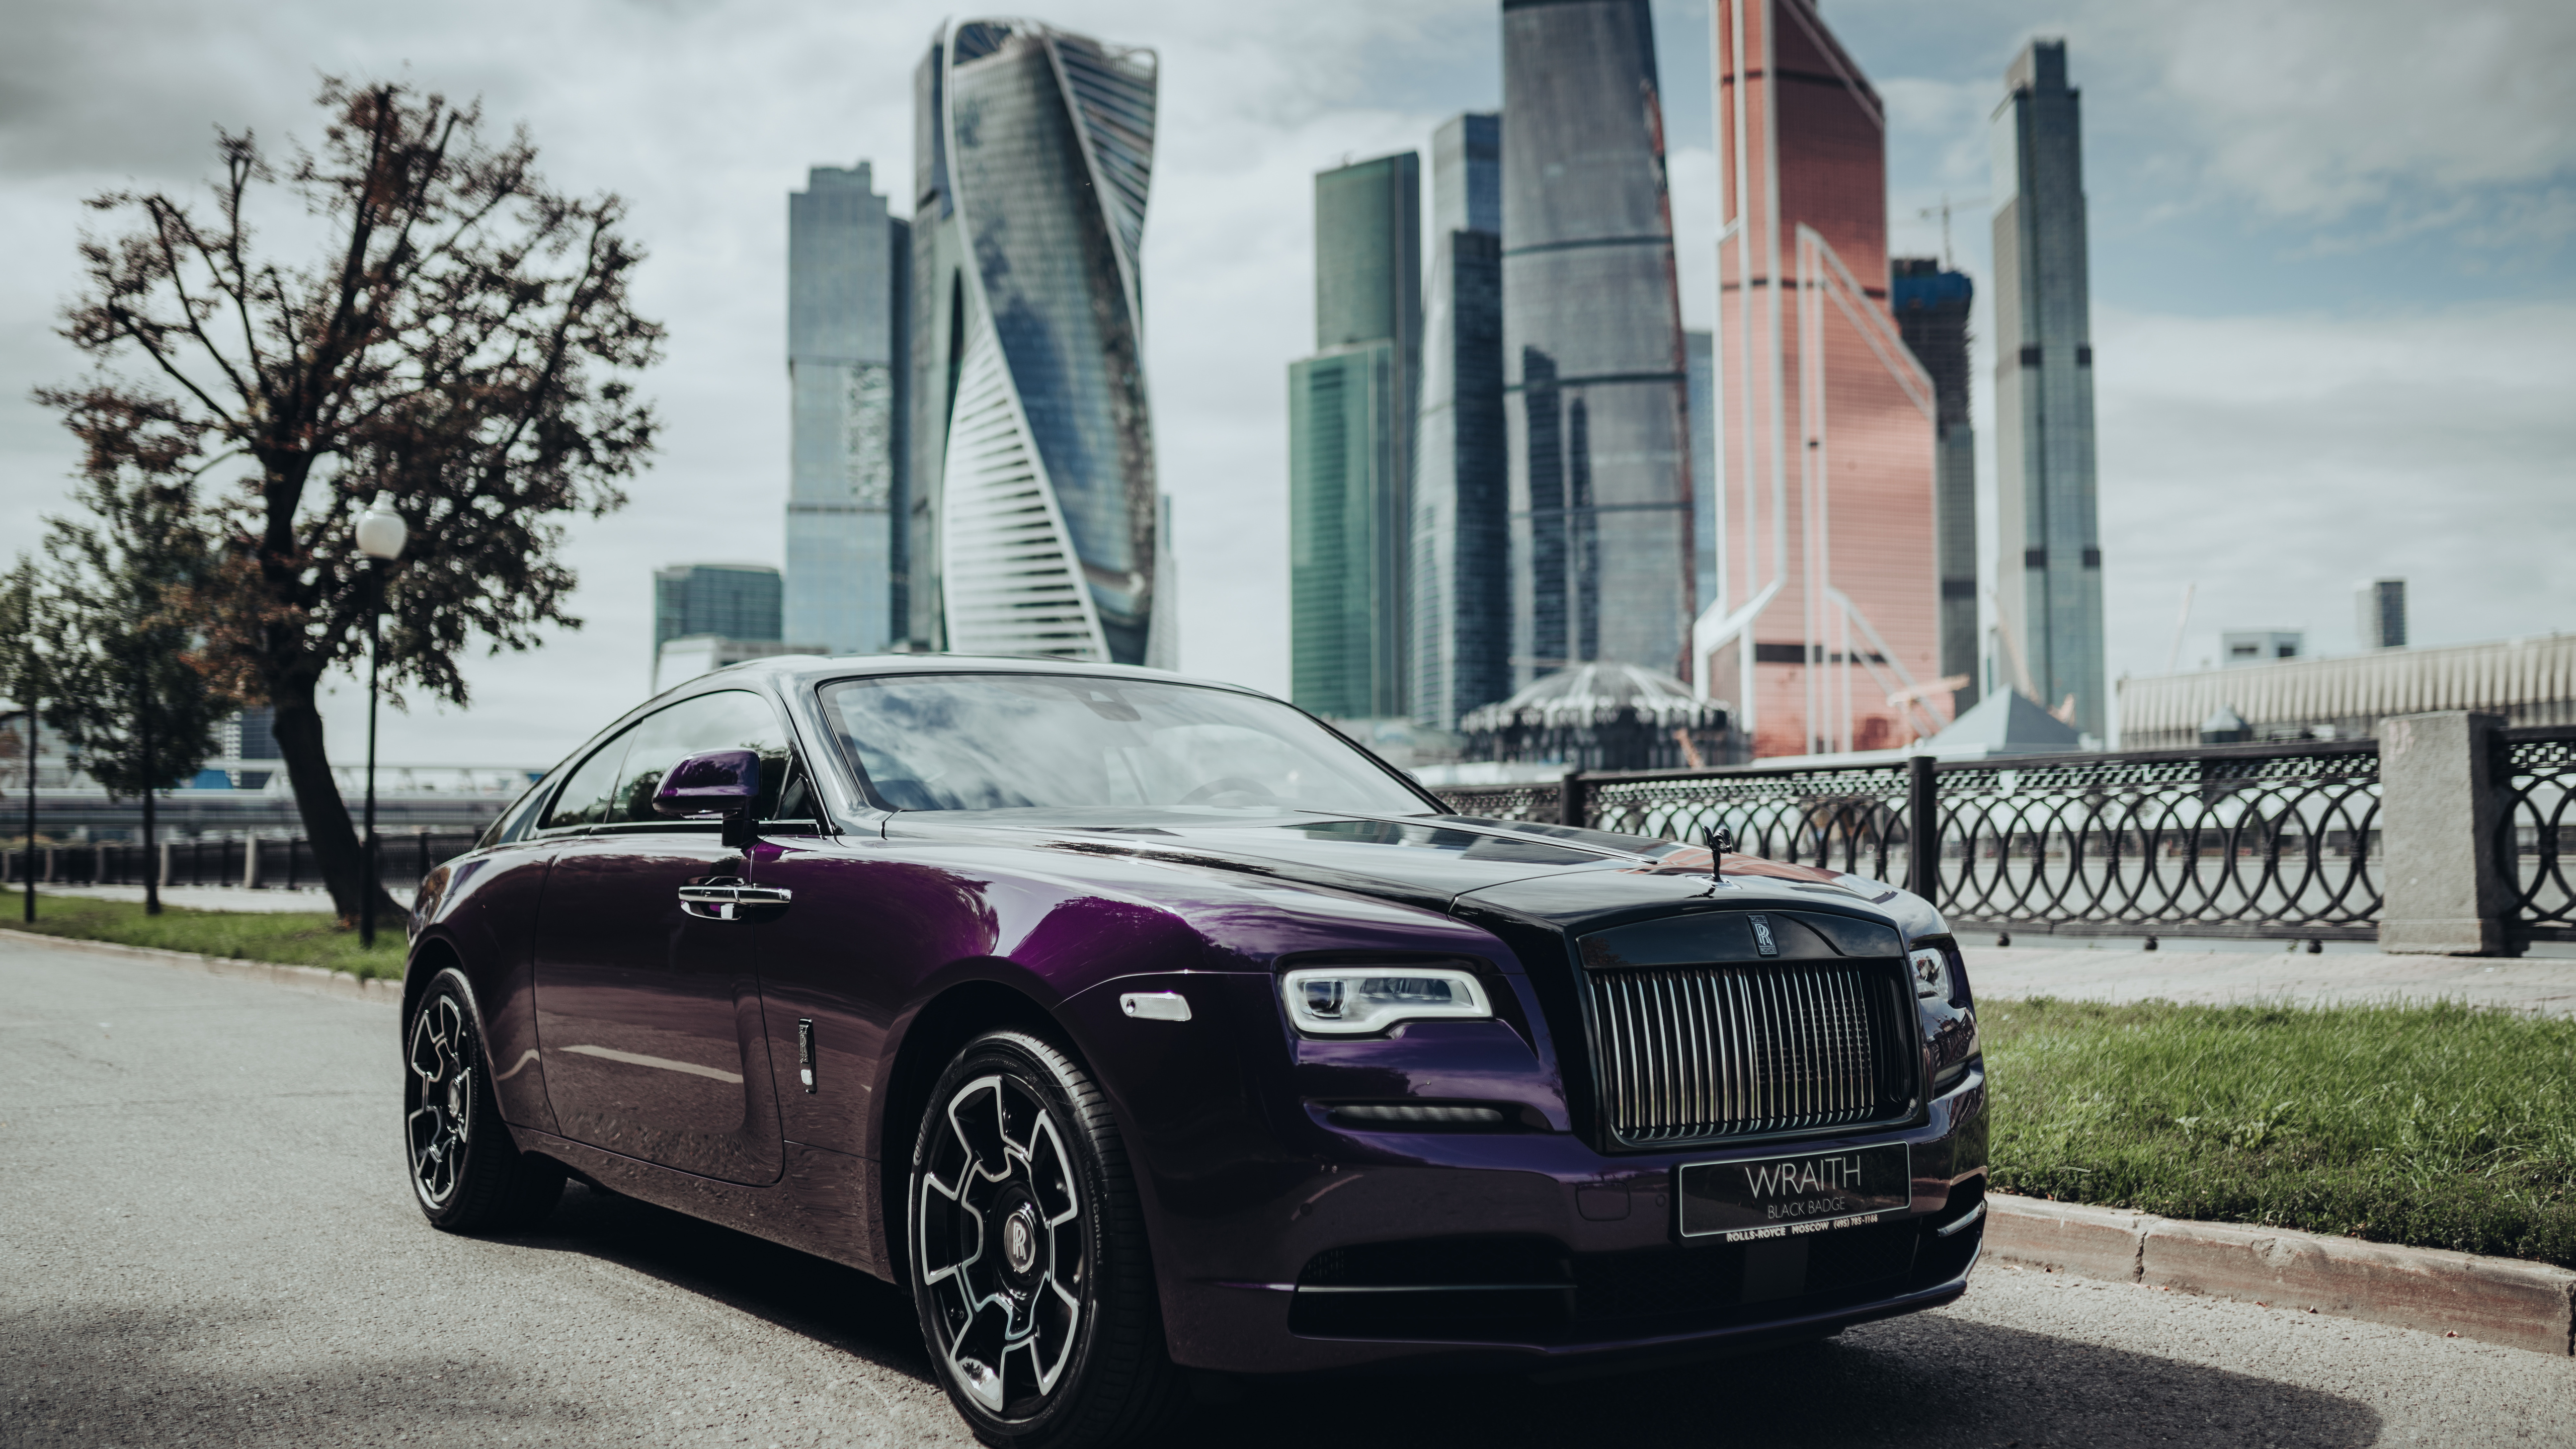 Luxury автомобили. Автомобили Rolls-Royce Wraith. Роллс Ройс врайт. Rolls Royce Wraith Black. Rolls Royce Wraith Москва.